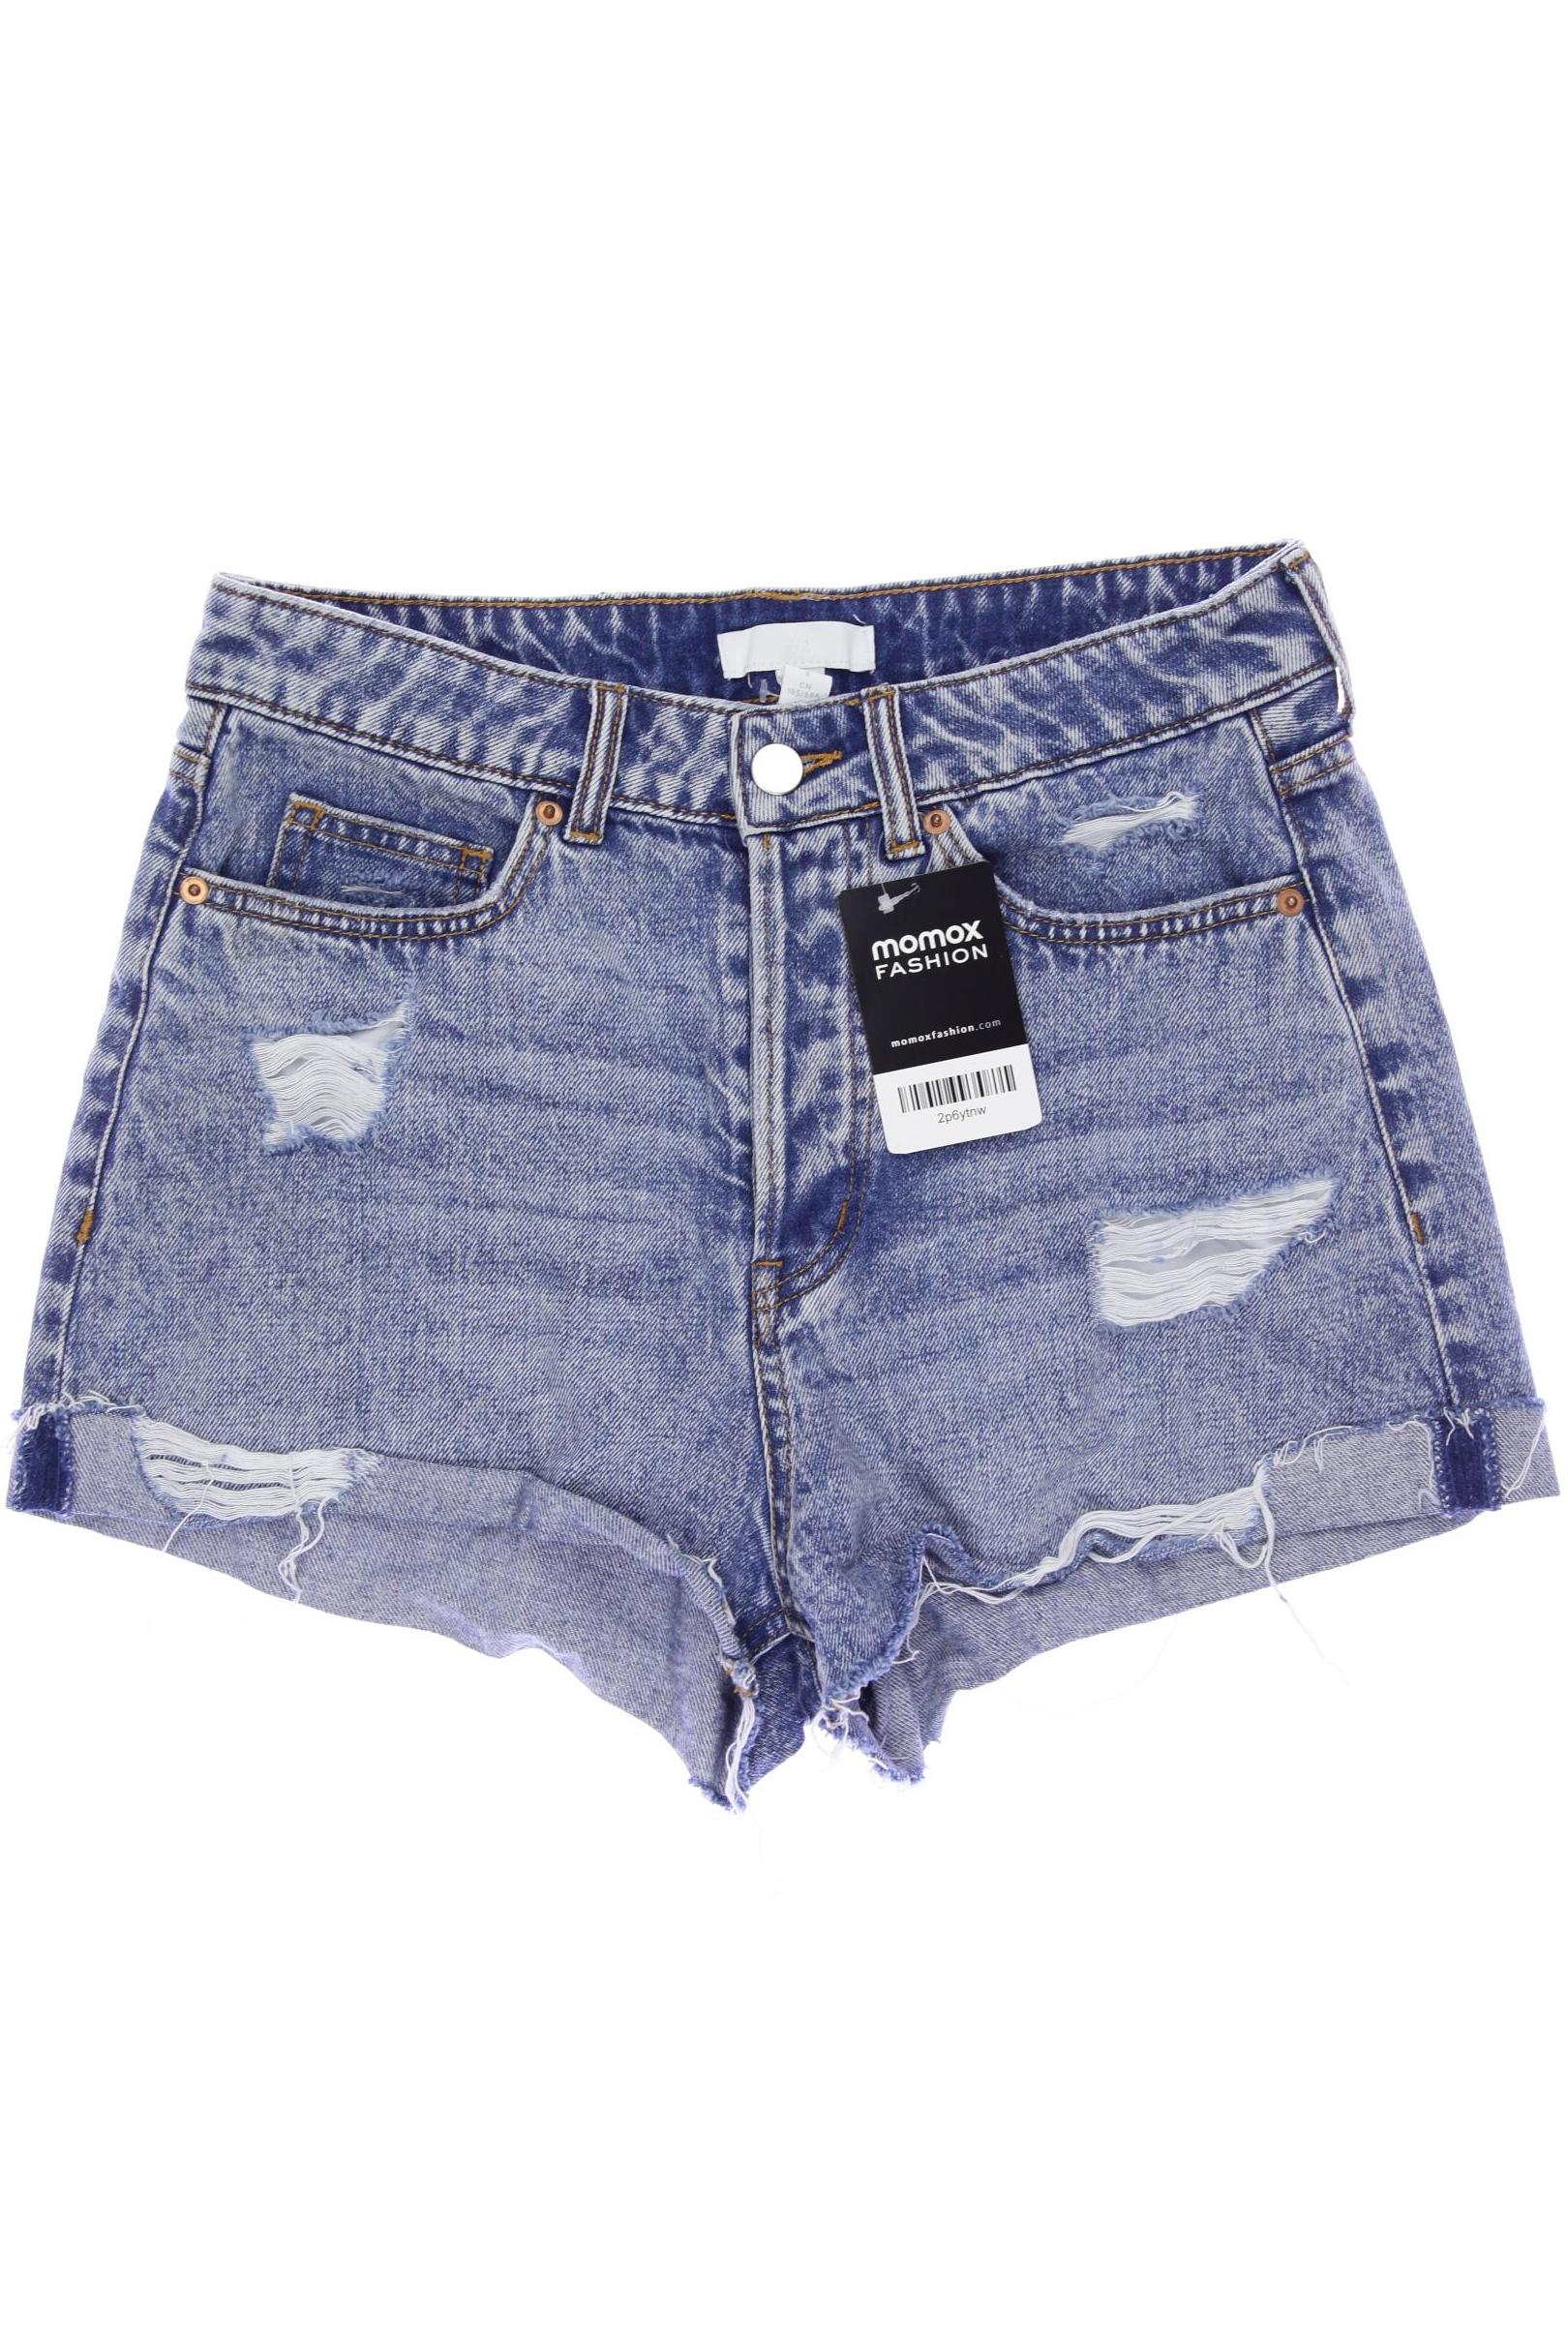 H&M Damen Shorts, blau, Gr. 36 von H&M